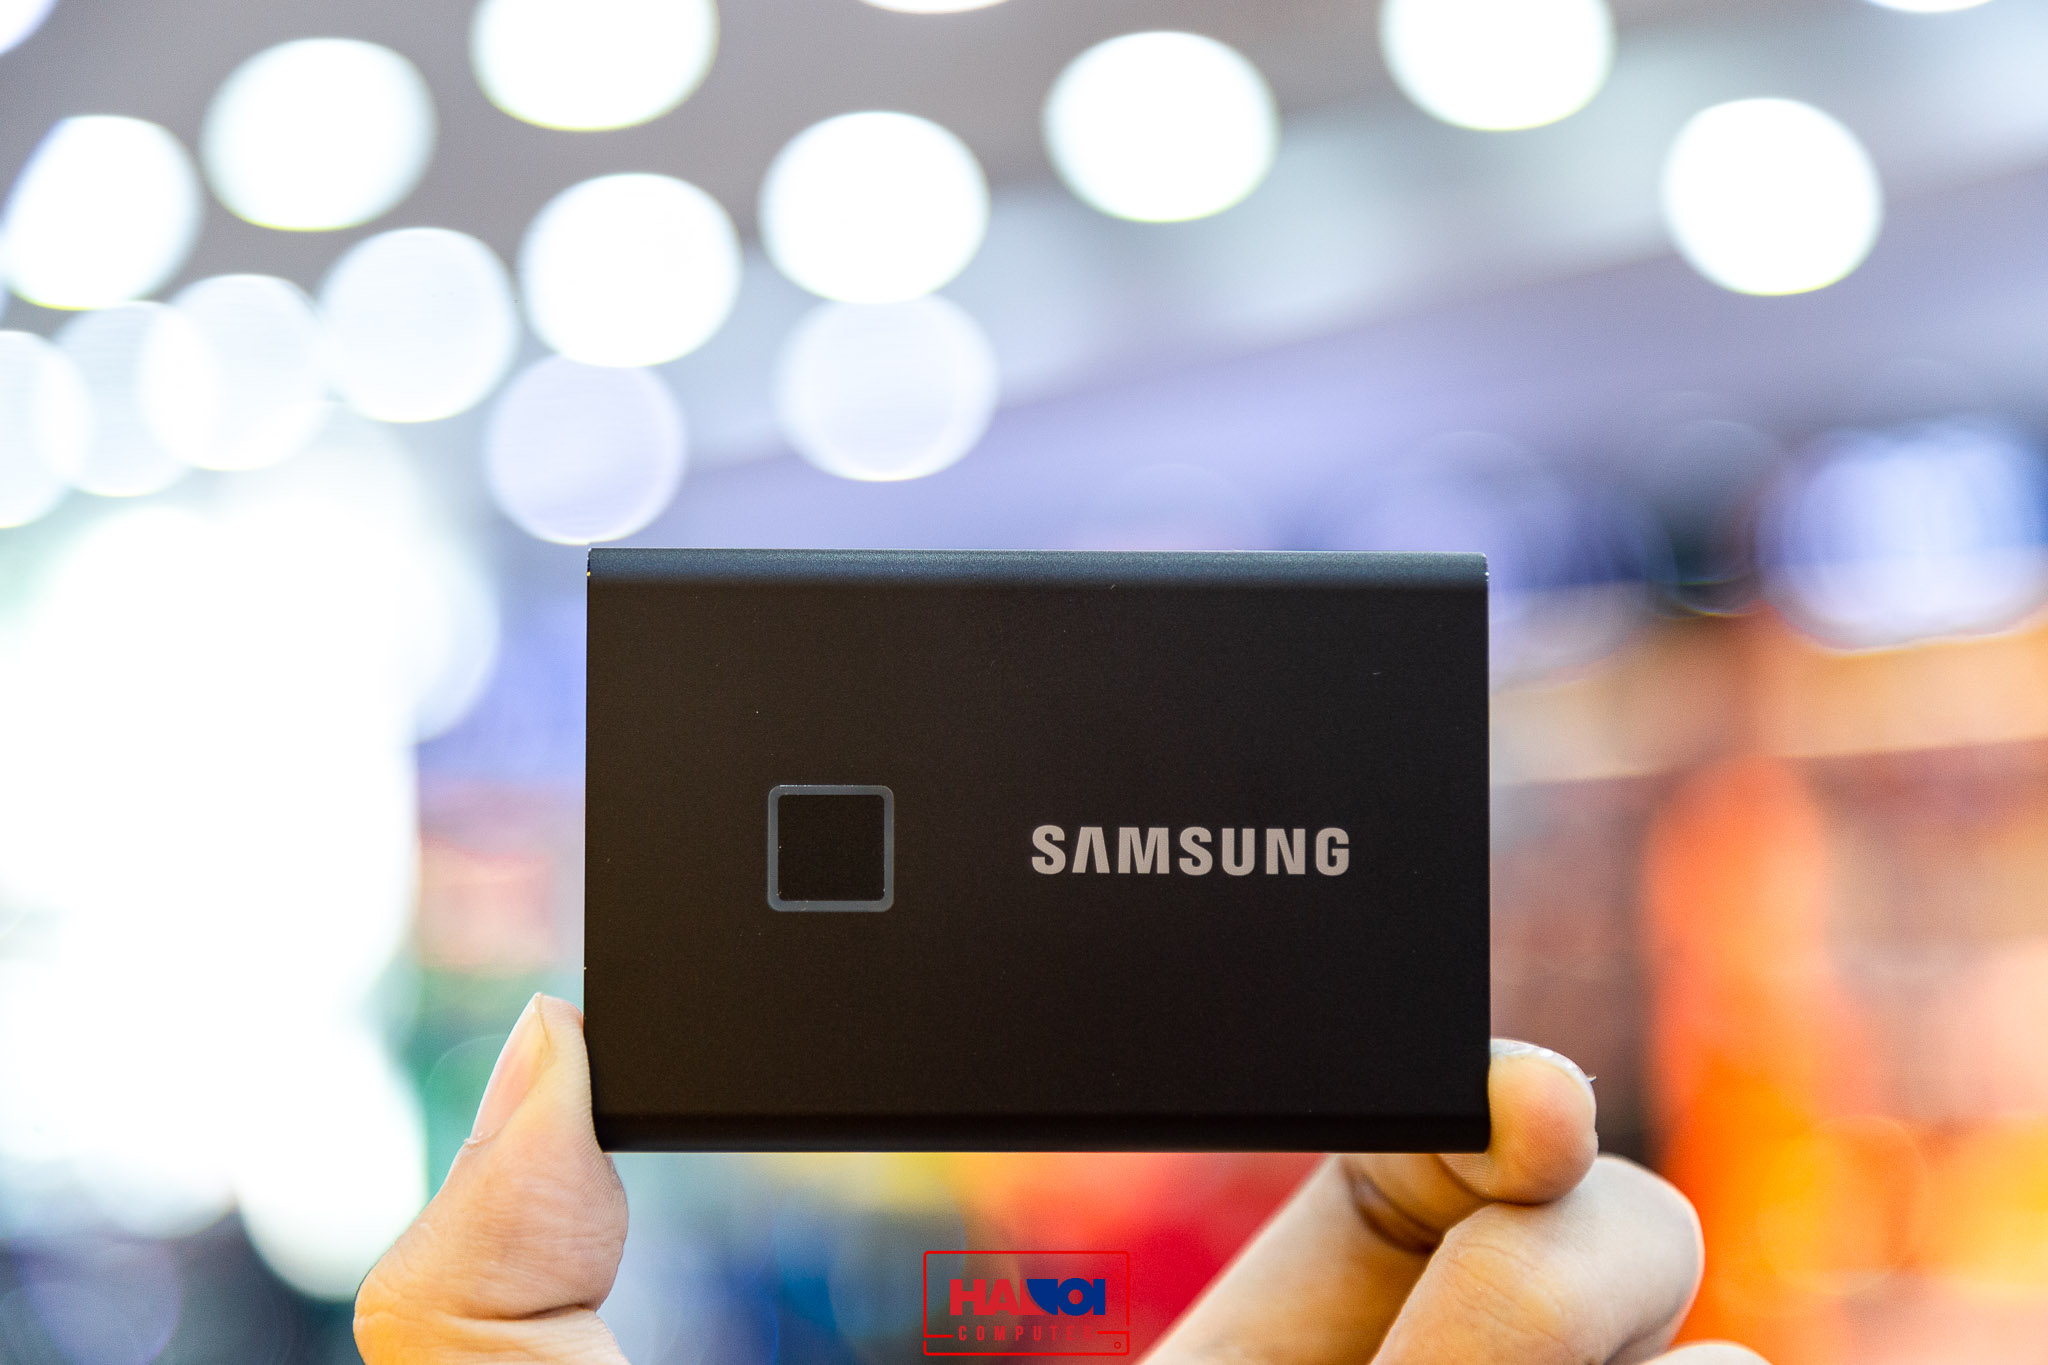 Ổ Cứng Di Động SSD Samsung T7 Touch Portable 500GB 2.5 inch USB 3.2 đen